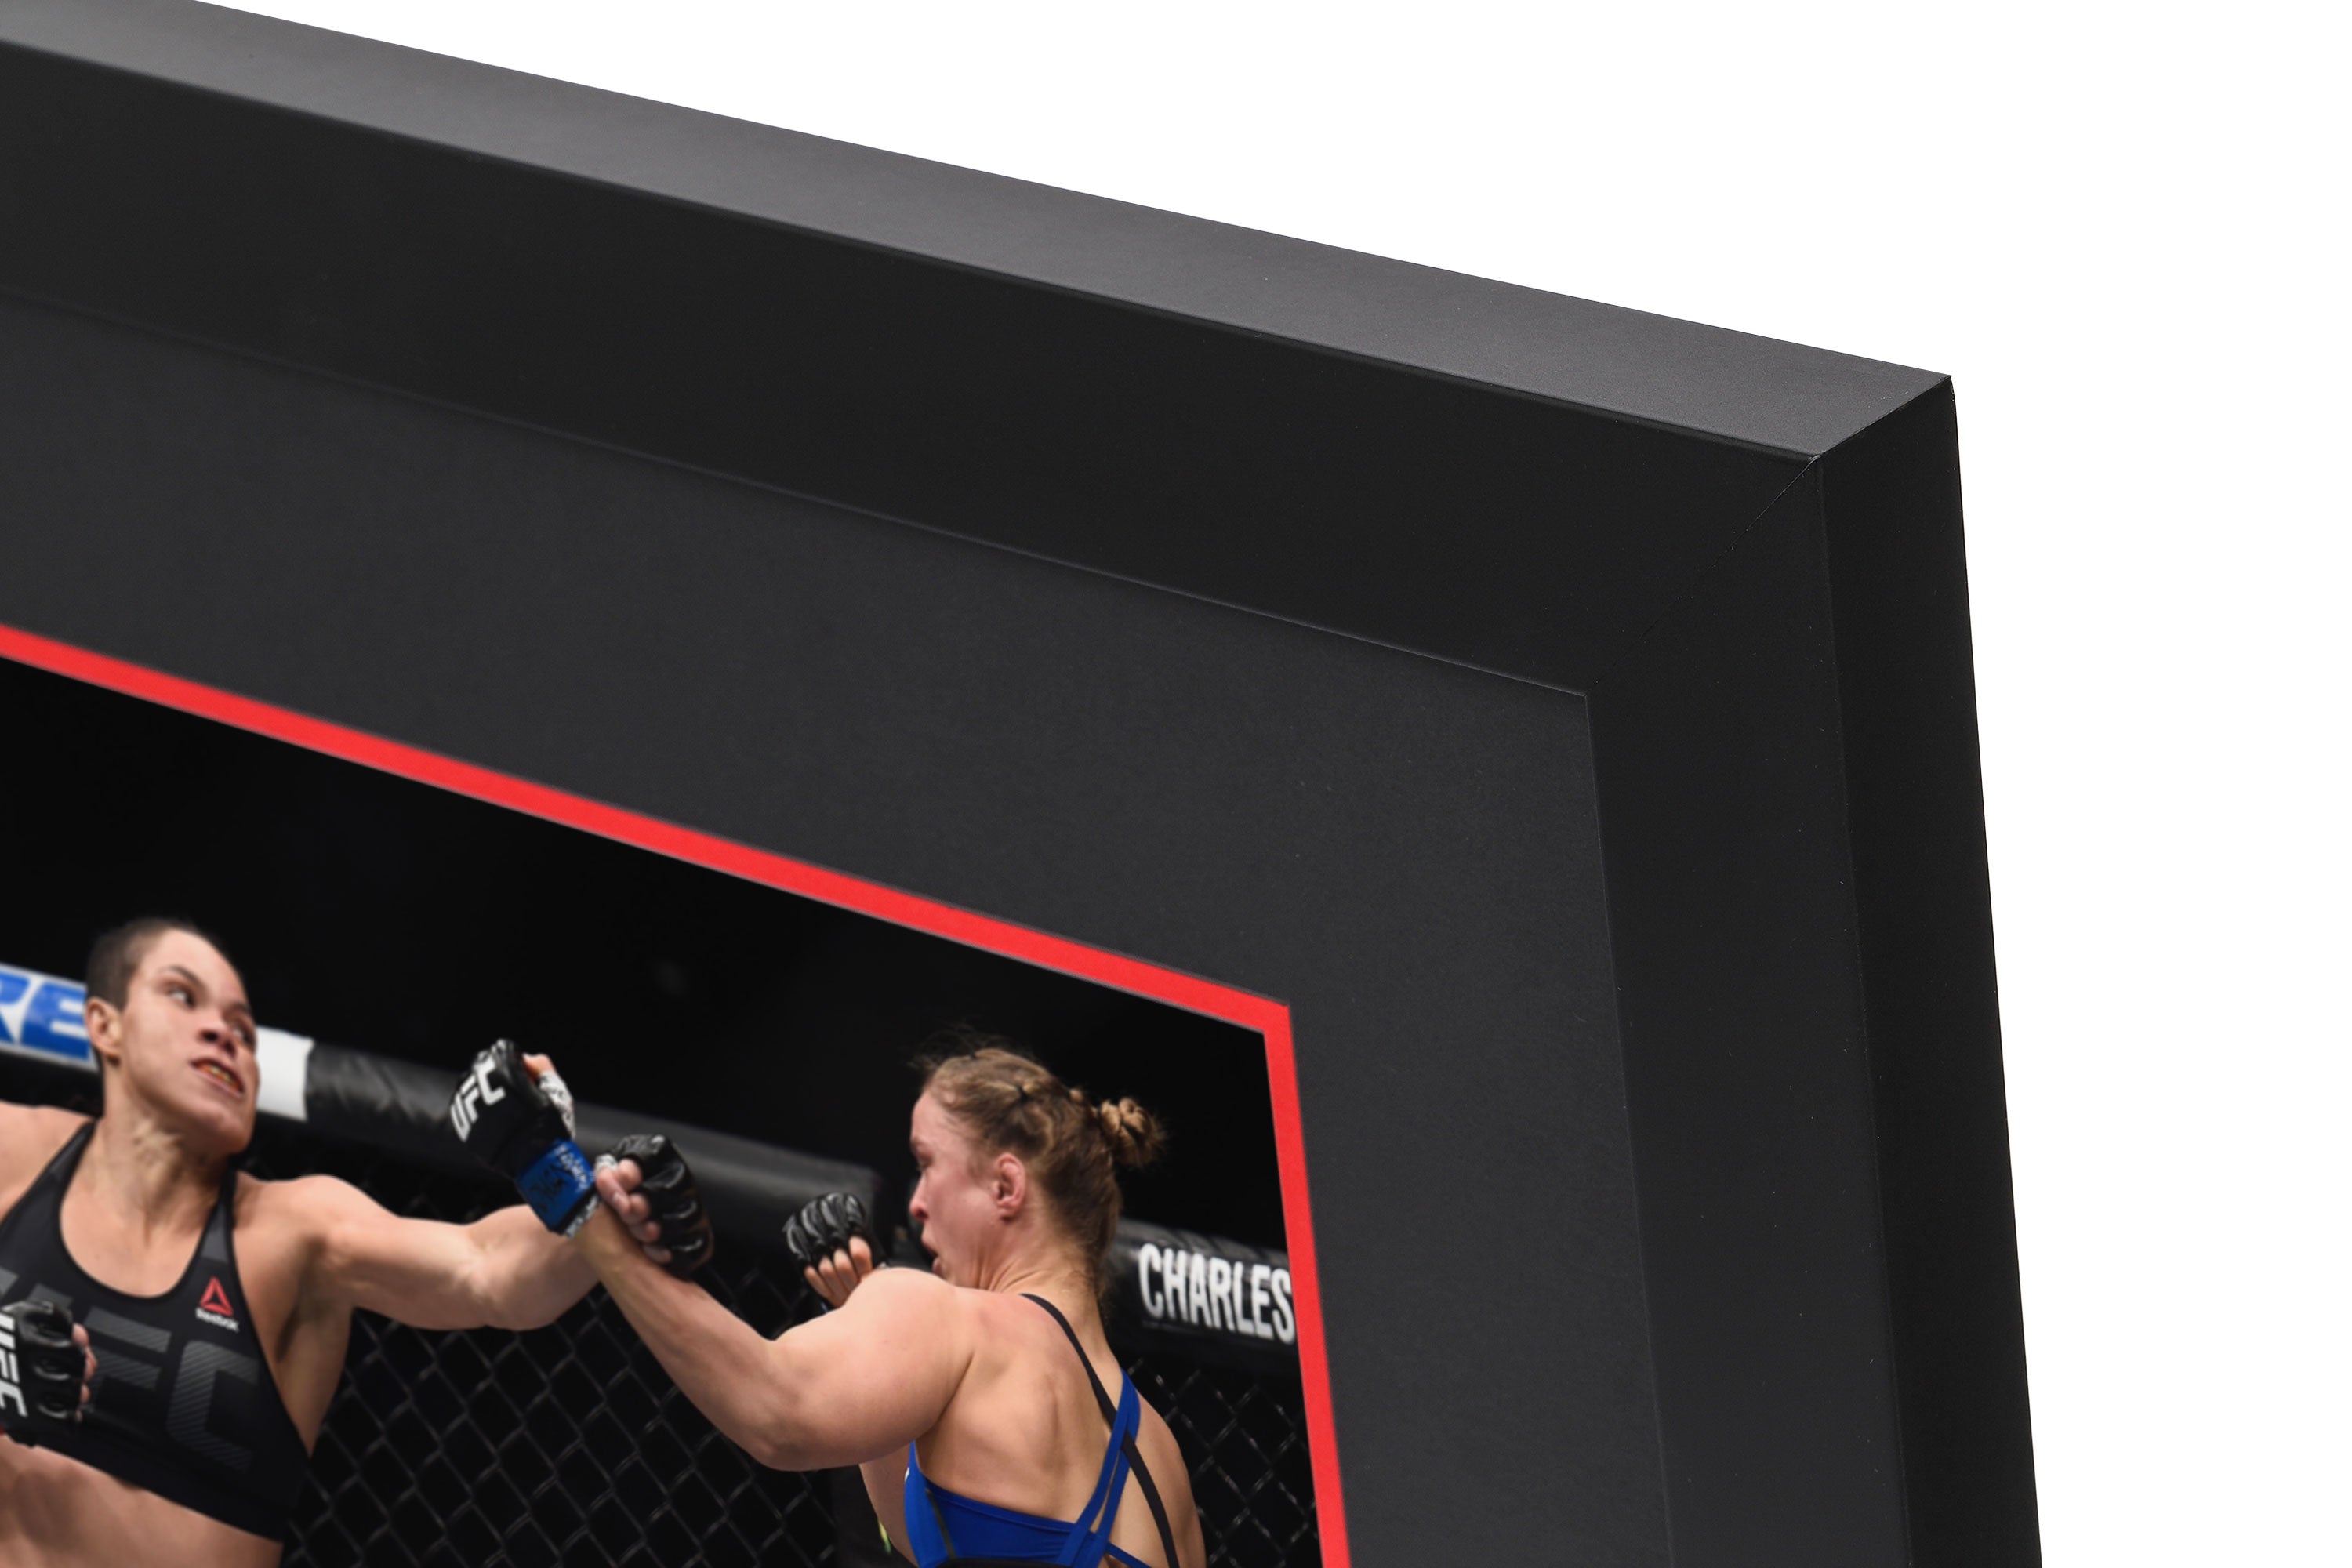 UFC 207: Nunes vs Rousey Canvas & Photo